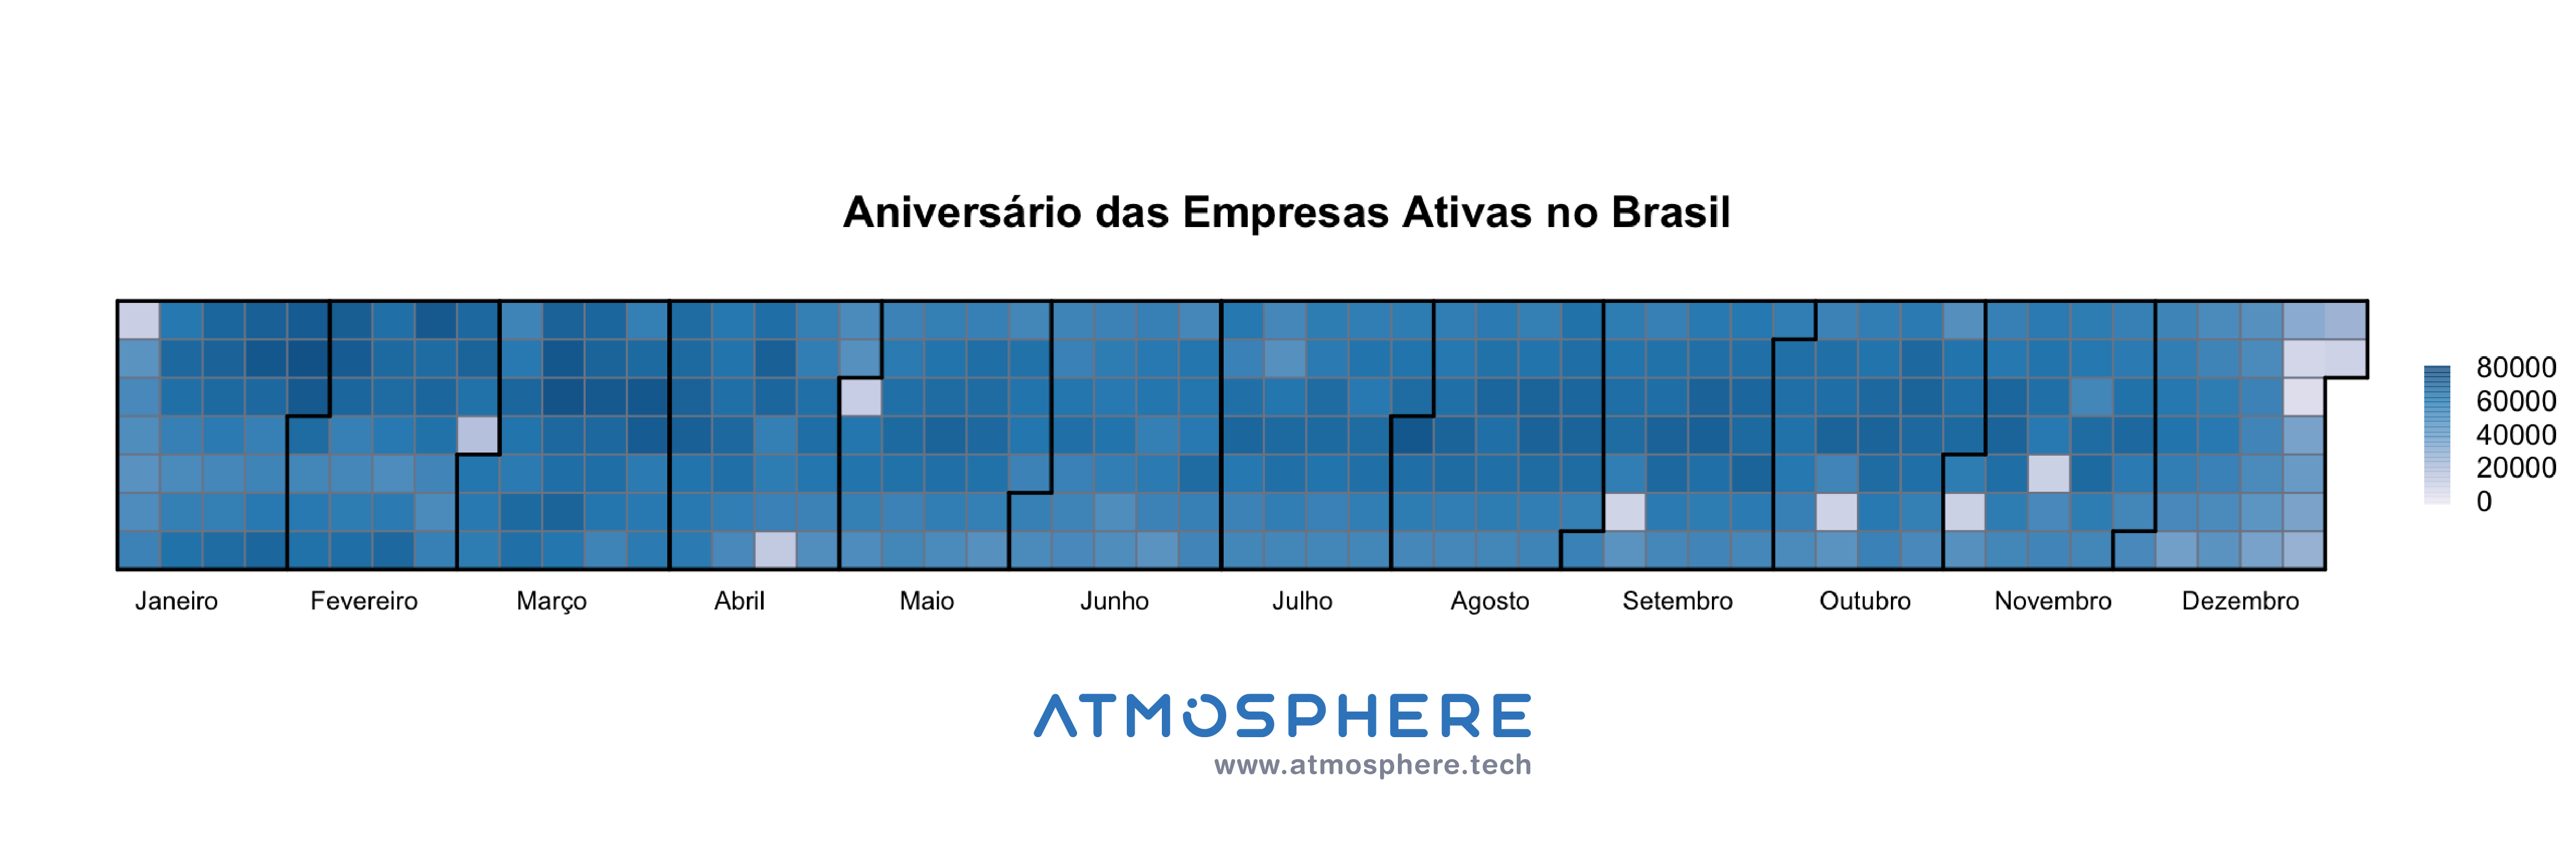 [Atmosphere Calendário de Aniversário das Empresas Ativas no Brasil